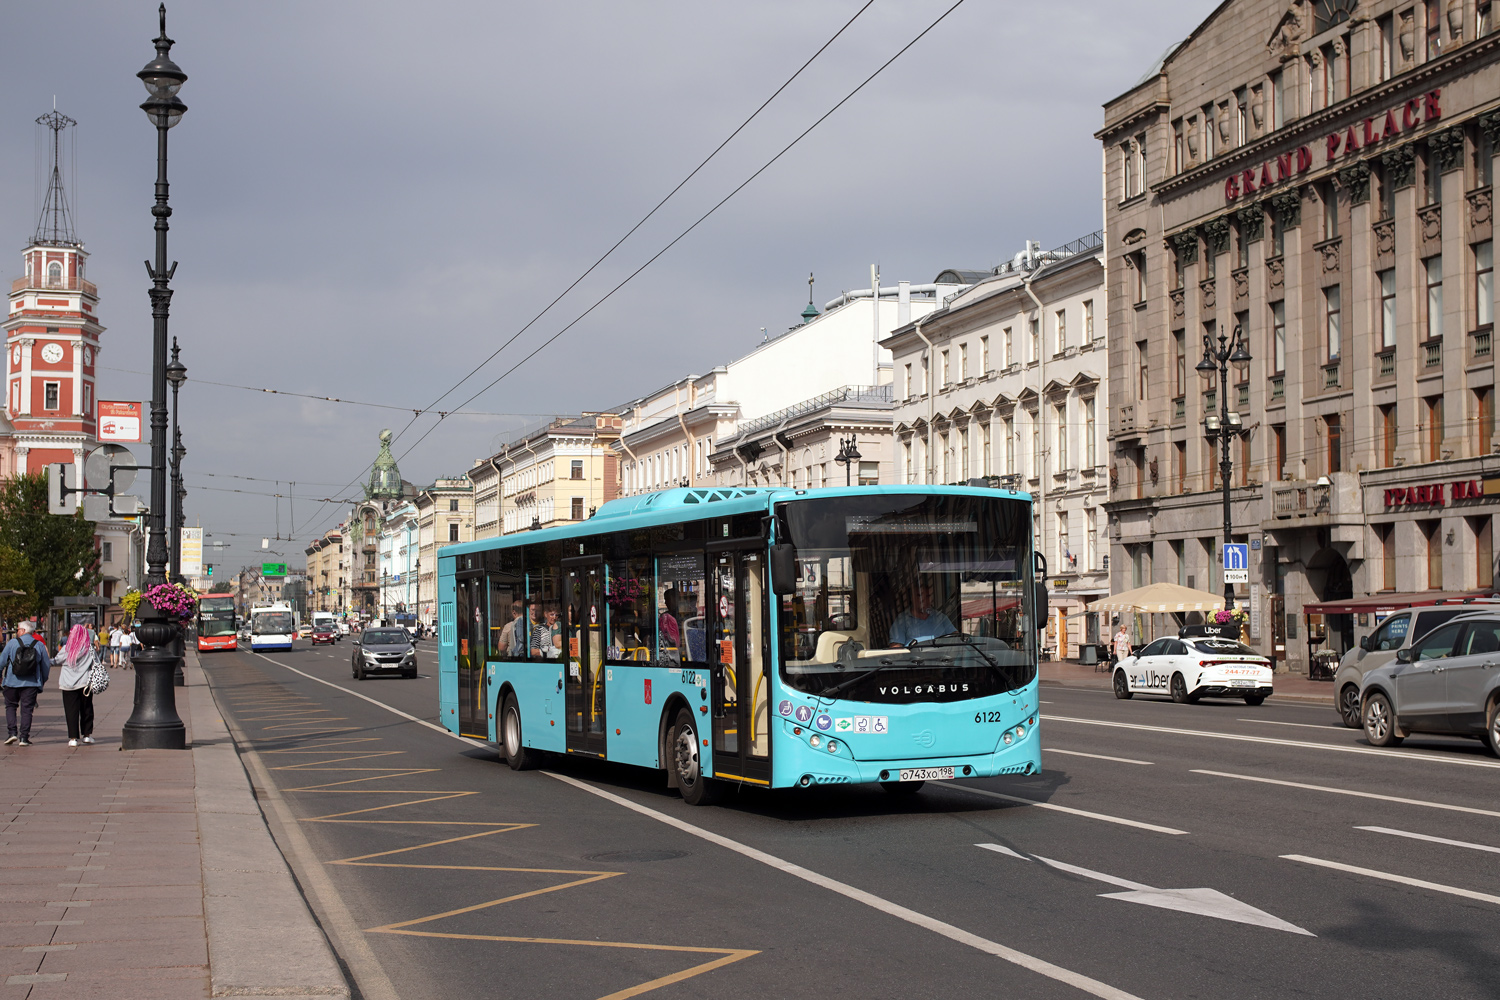 Szentpétervár, Volgabus-5270.G2 (LNG) sz.: 6122